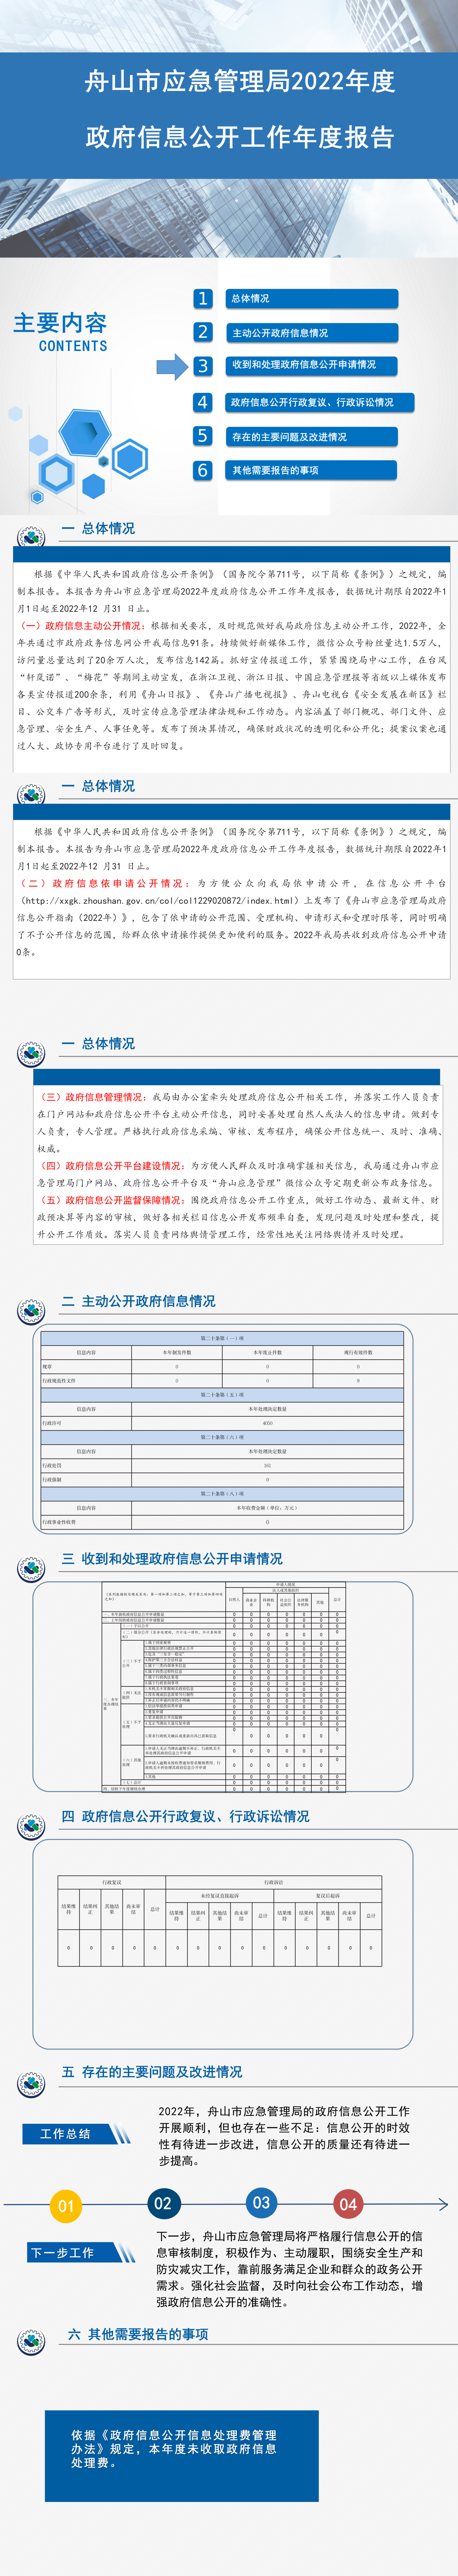 舟山市应急管理局2022年度政府信息公开工作年度报告.png